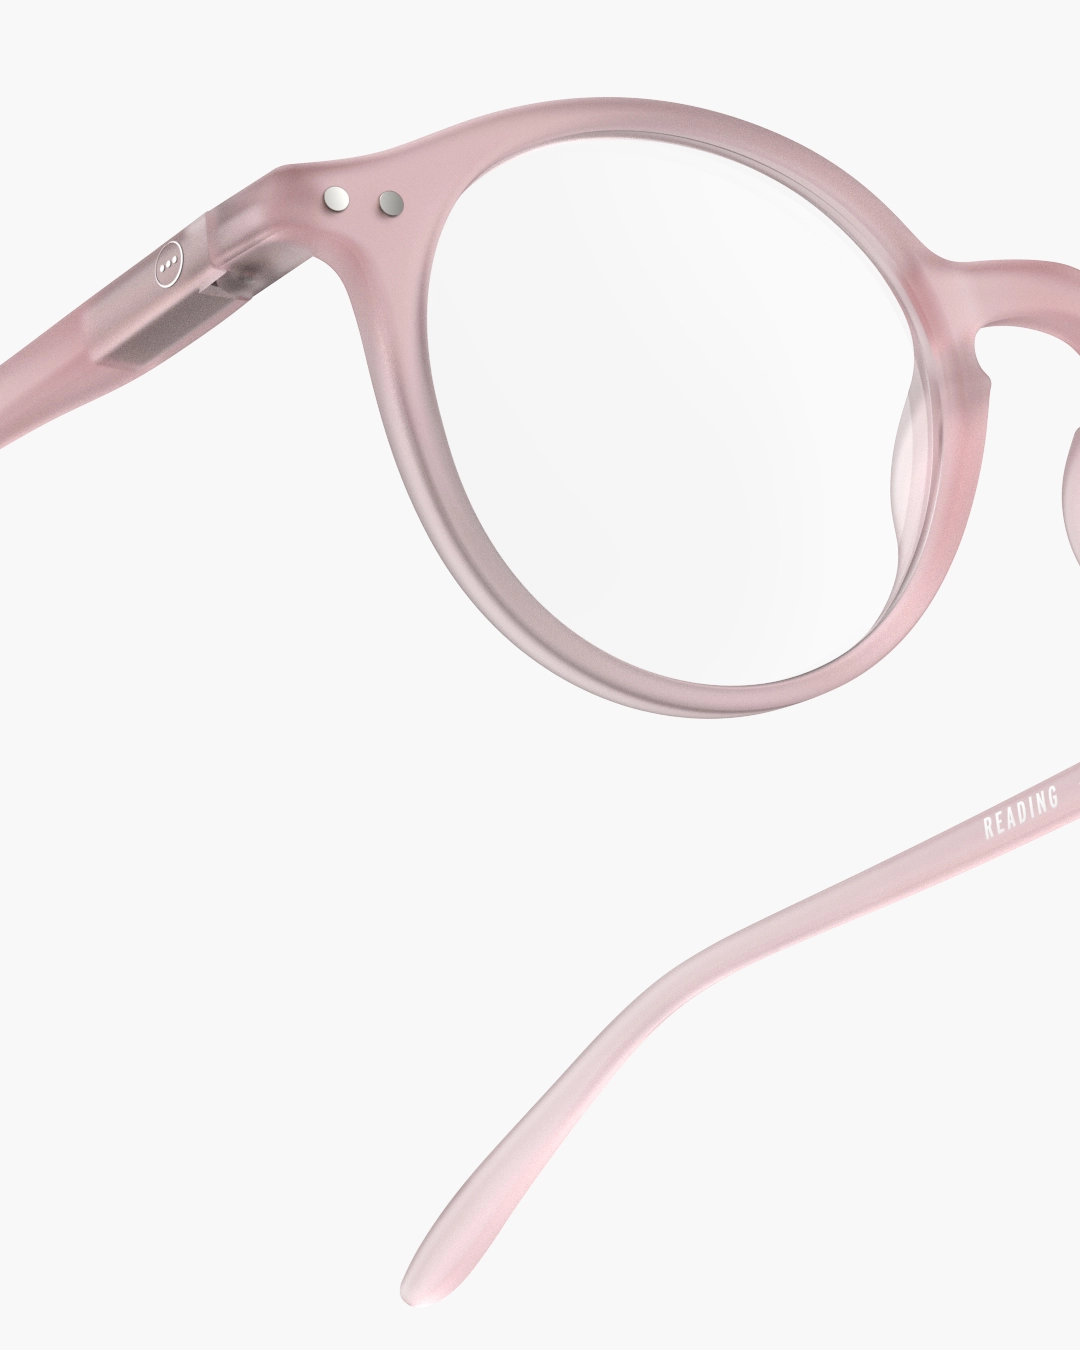 IZIPIZI #D Pink Reading Glasses